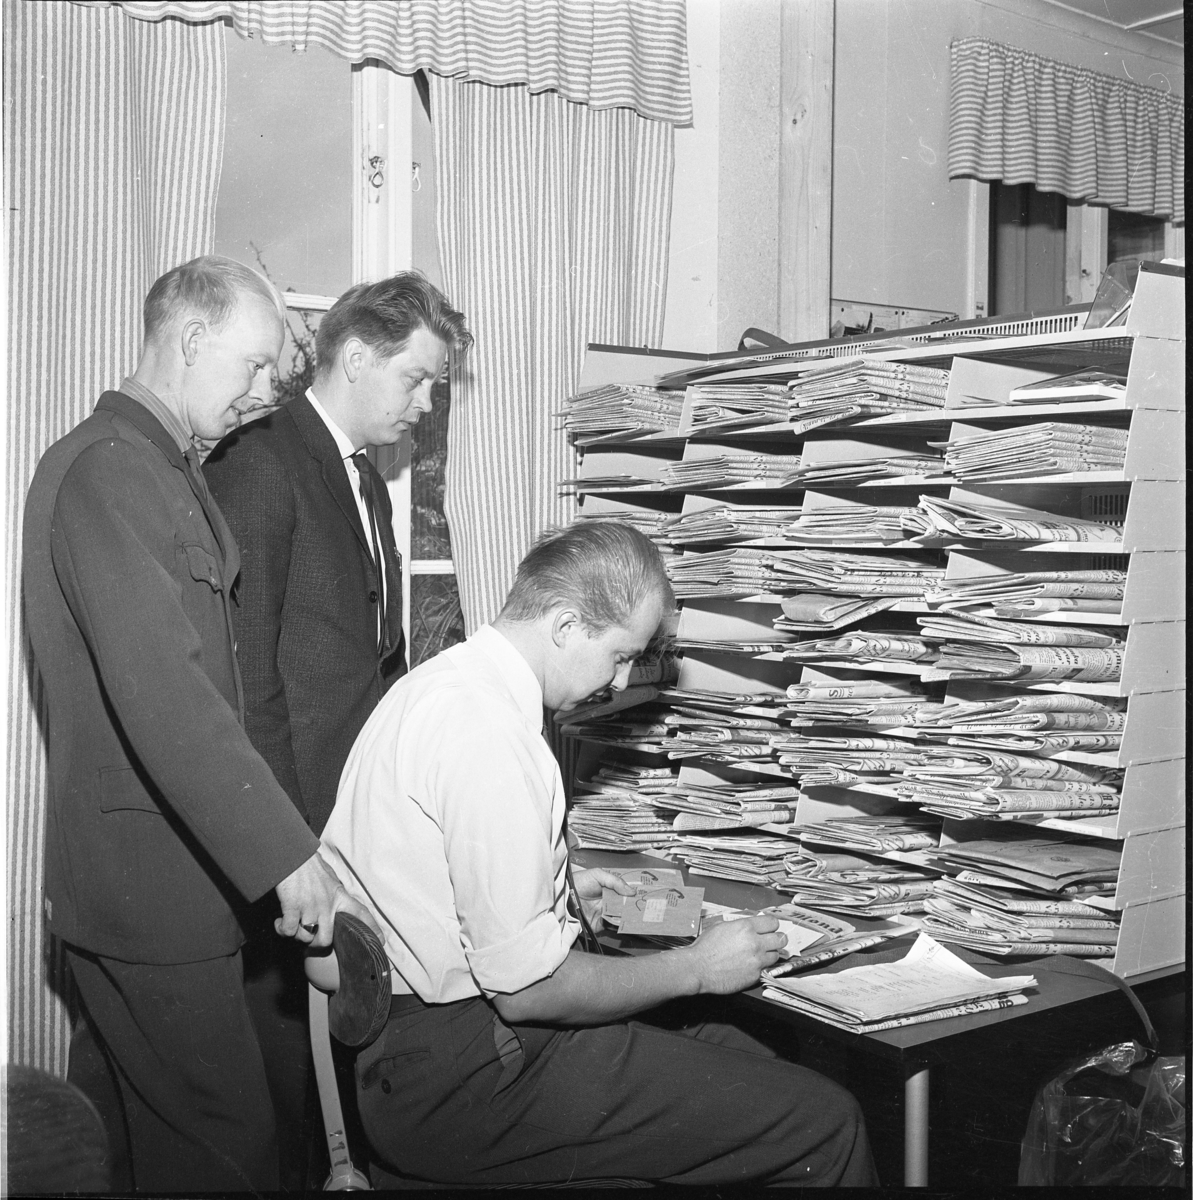 Premiär för lantbrevbärare i Gränna, 1 okt 1967. Henry Kvist och Rolf Lindén stående bakom Anders Hjelte som sitter i vit skjorta och slips vid ett bord med post i händerna. På bordet en hög hylla med postfack fyllda med tidningar.